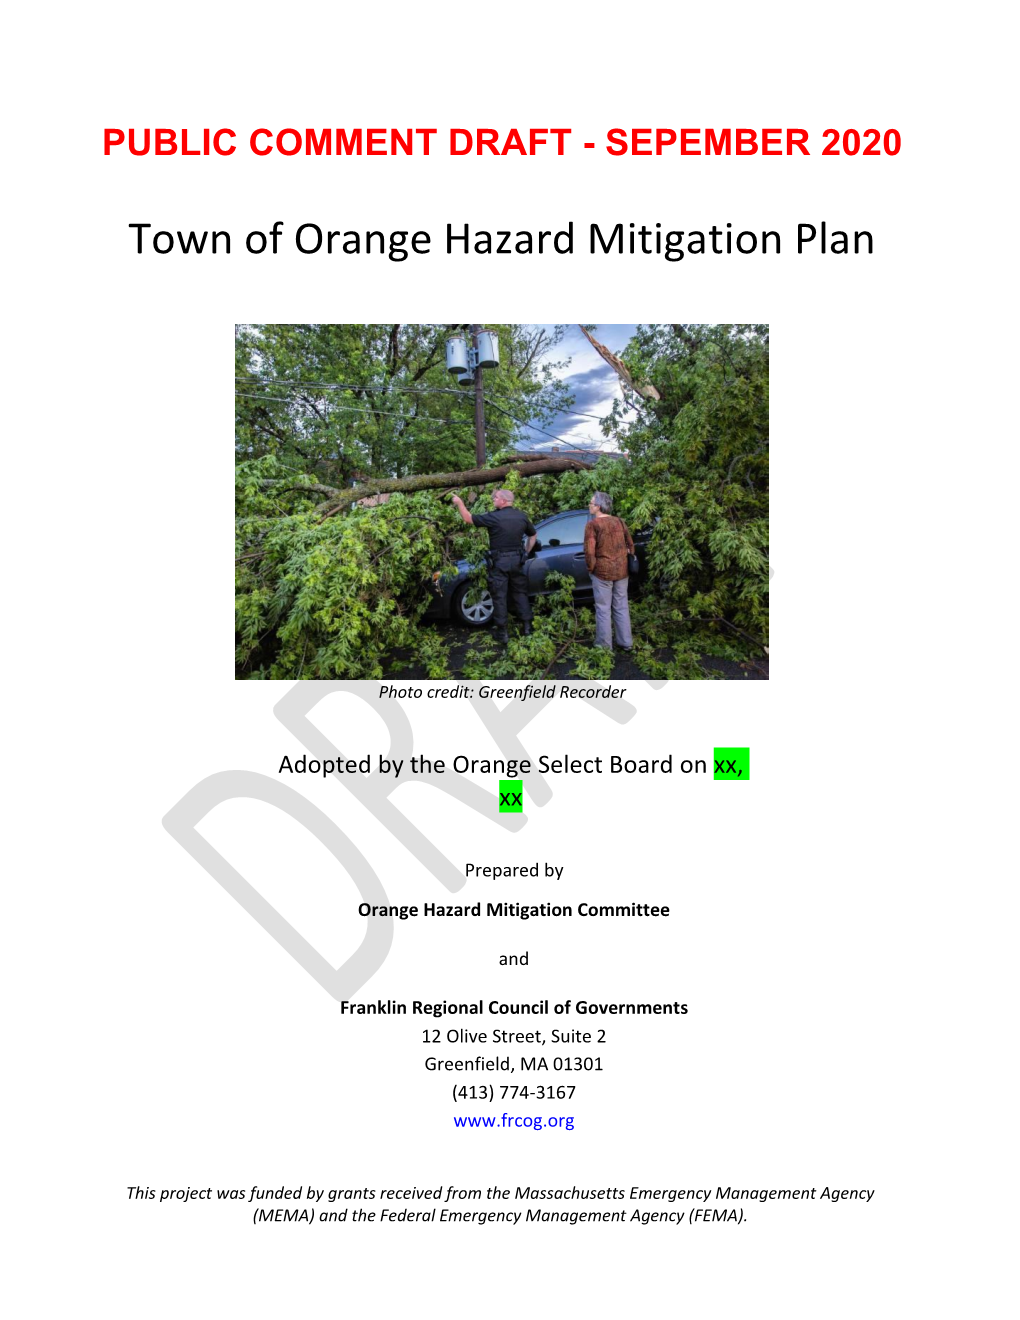 Orange Hazard Mitigation Plan Public Comment Draft